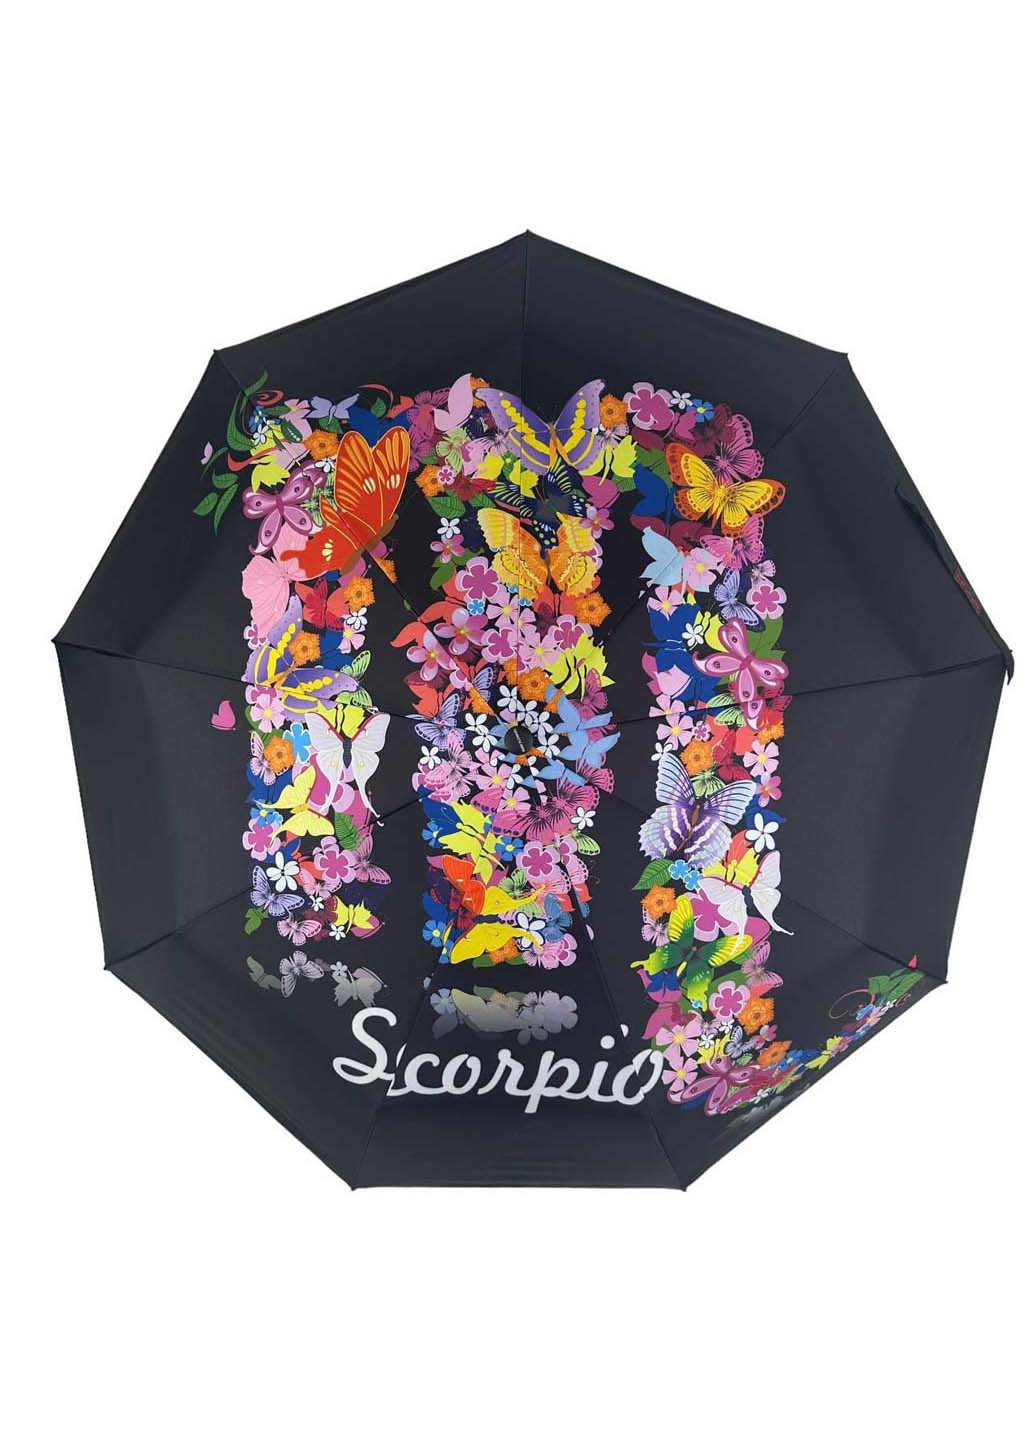 Женский зонт-автомат "Зодиак" в подарочной упаковке с платком Rain (265992223)